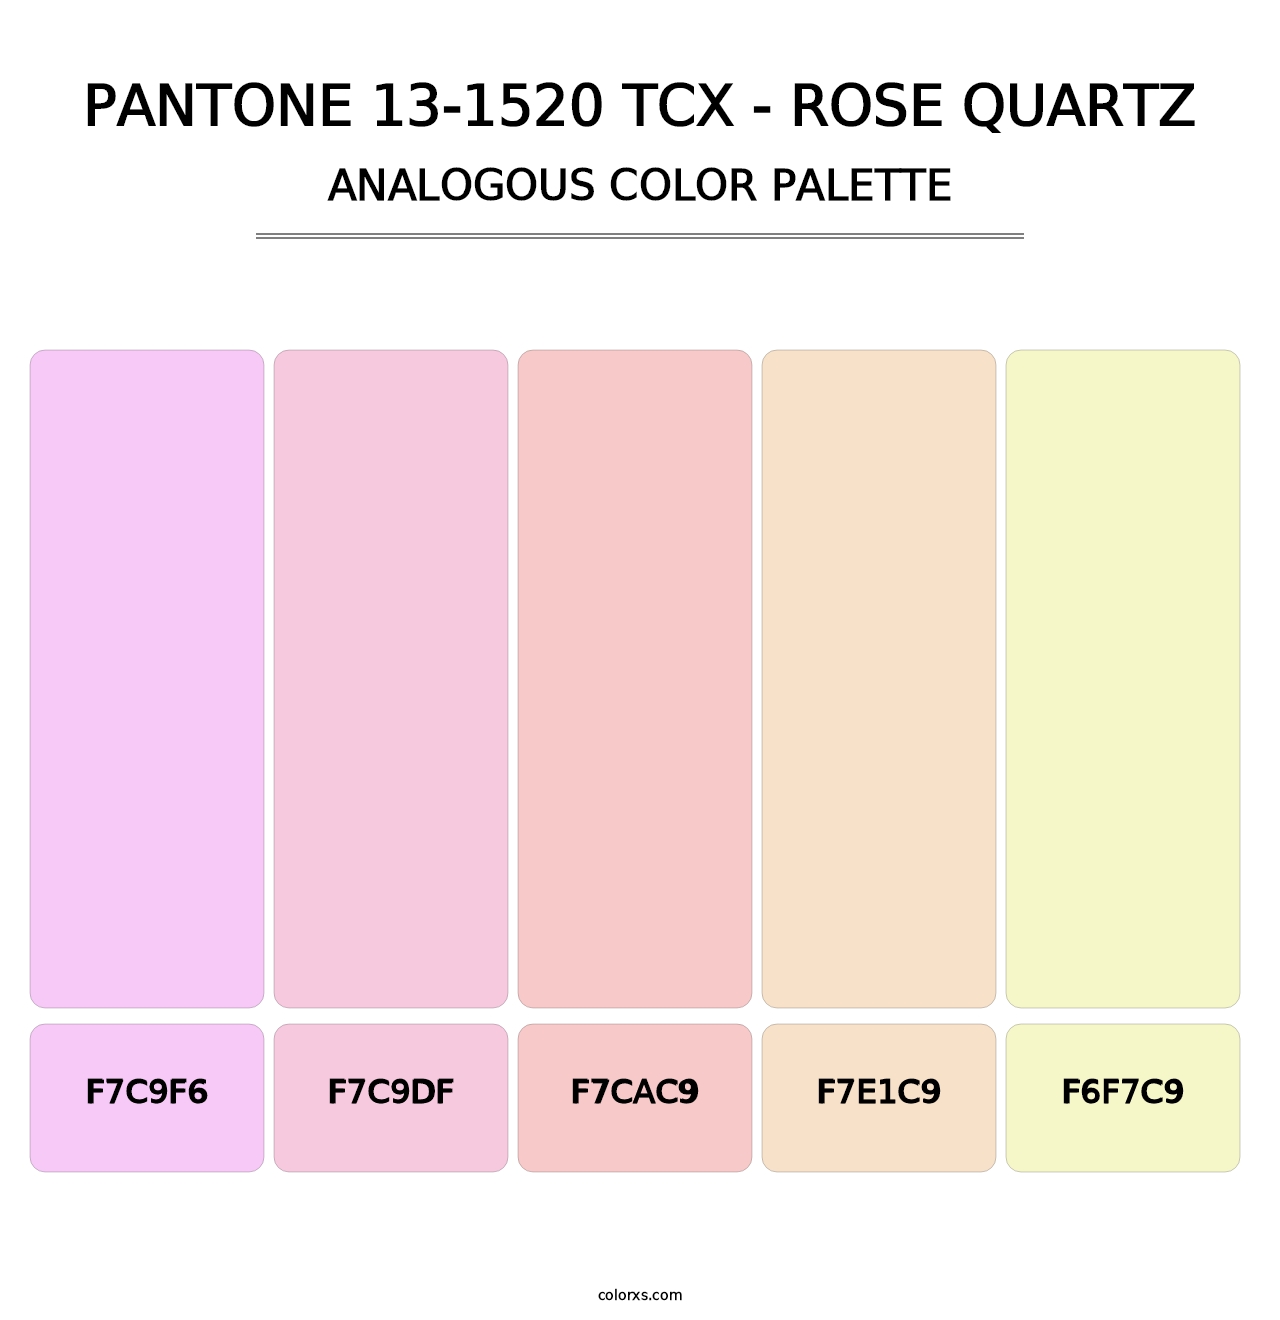 PANTONE 13-1520 TCX - Rose Quartz - Analogous Color Palette